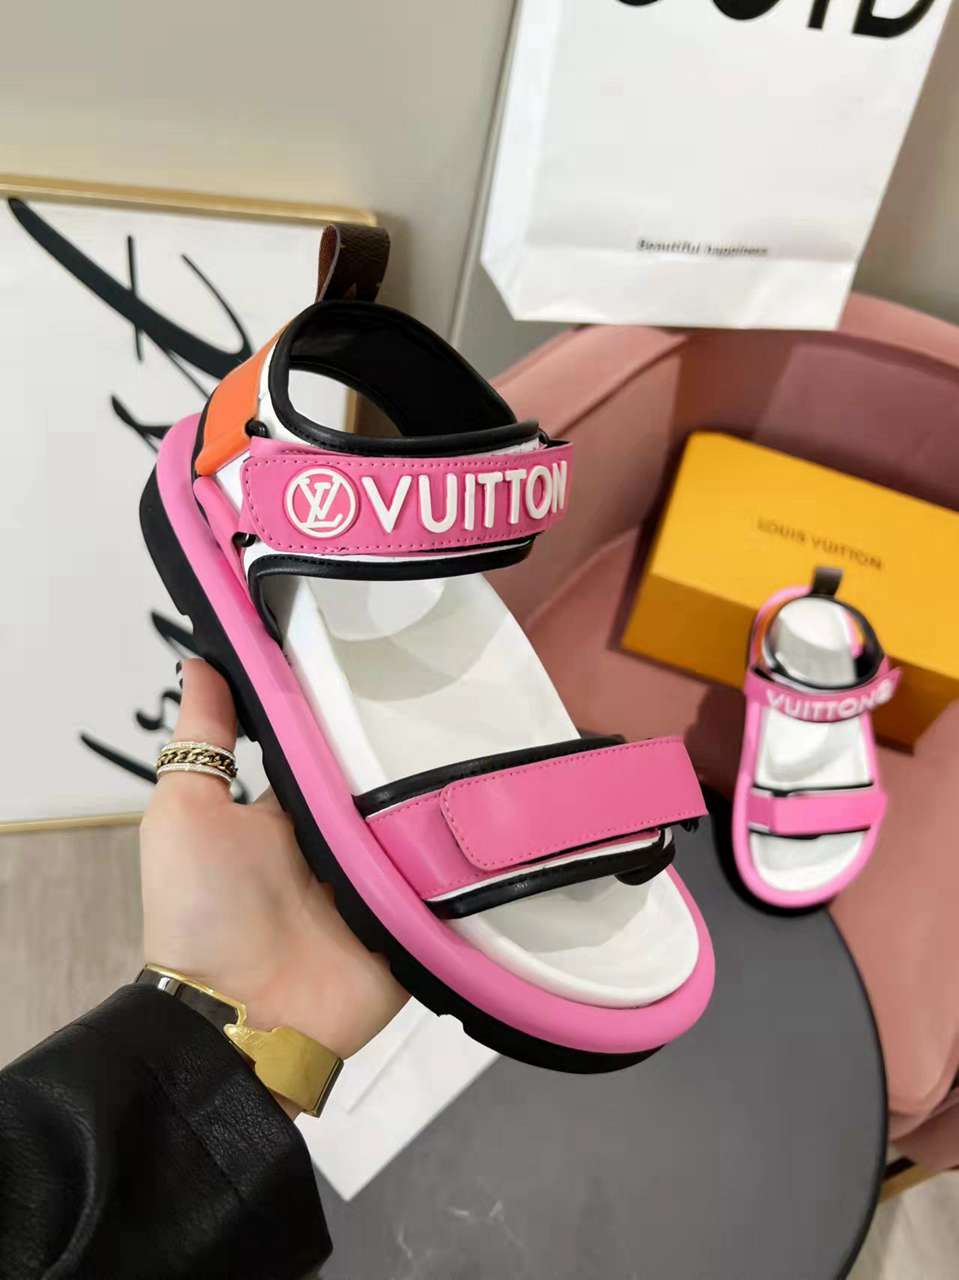 Louis Vuitton Velcro Strap Sandals  in 259146, cheap Louis Vuitton Sandal, only $82!